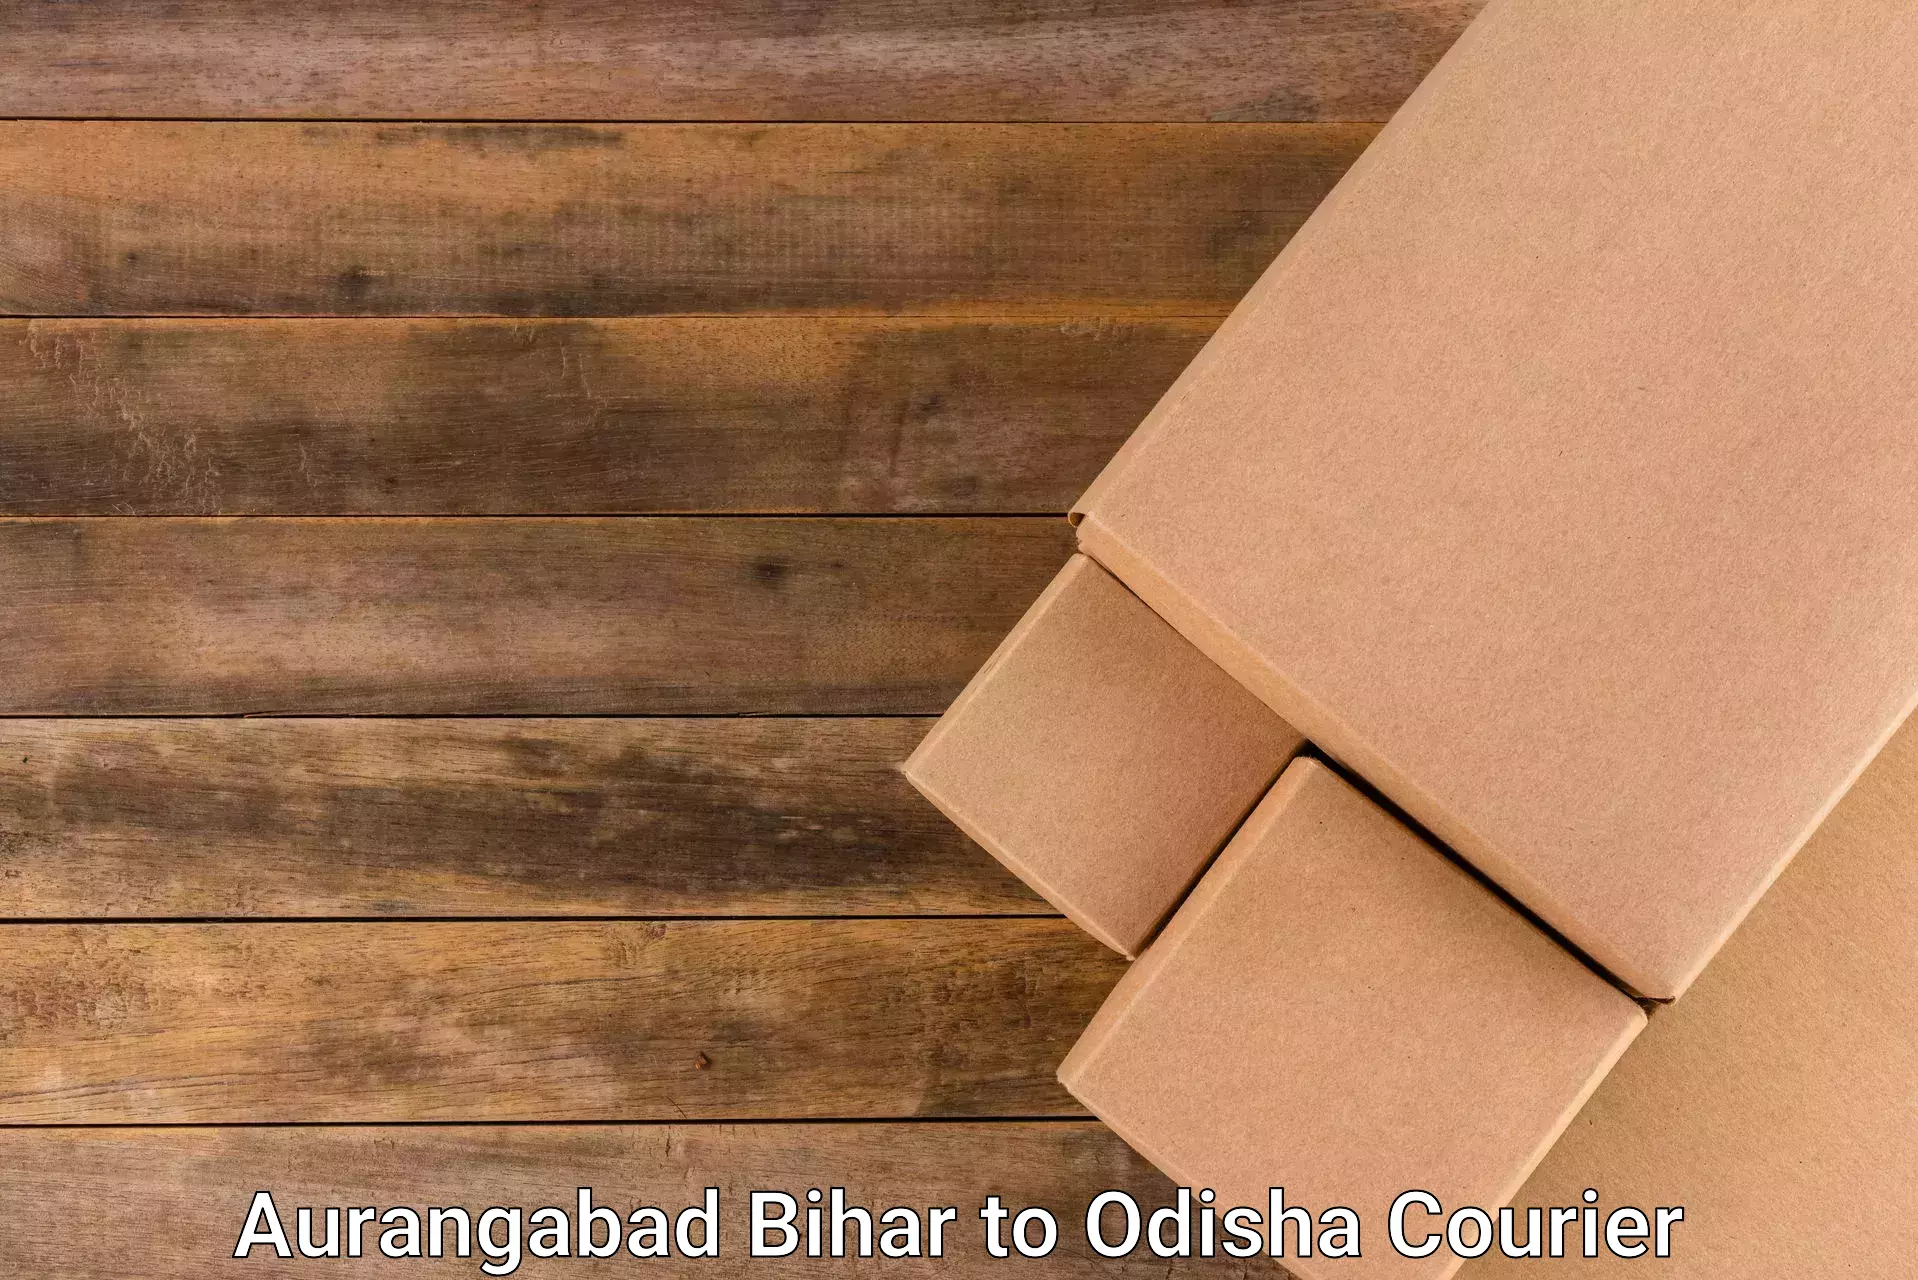 Cost-effective courier solutions Aurangabad Bihar to Jaleswar